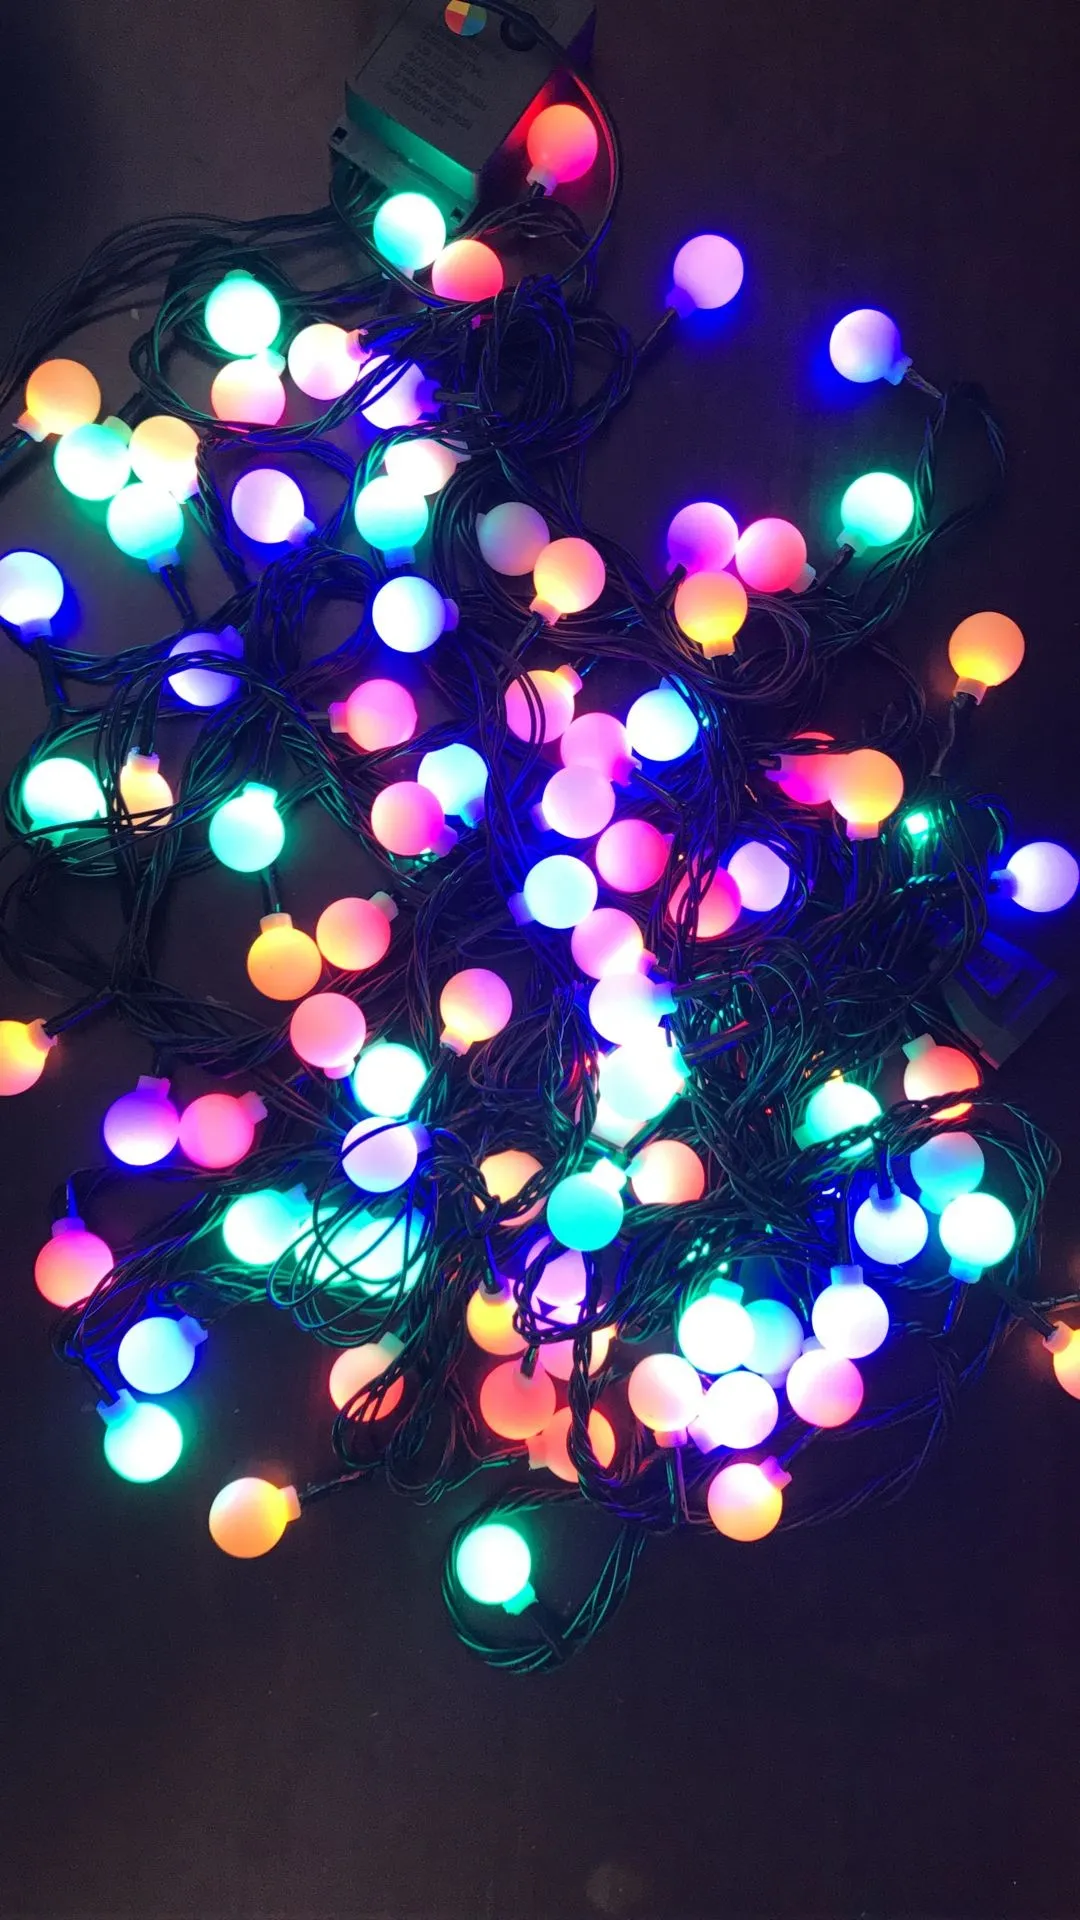 Строки освещения 10M100 Светодиодные Вишневый шар Fairy Lights LED Низкого напряжения Темно-Зеленая Линия Звездные Патио Струнные Светильники Для Украшения На Открытом Воздухе